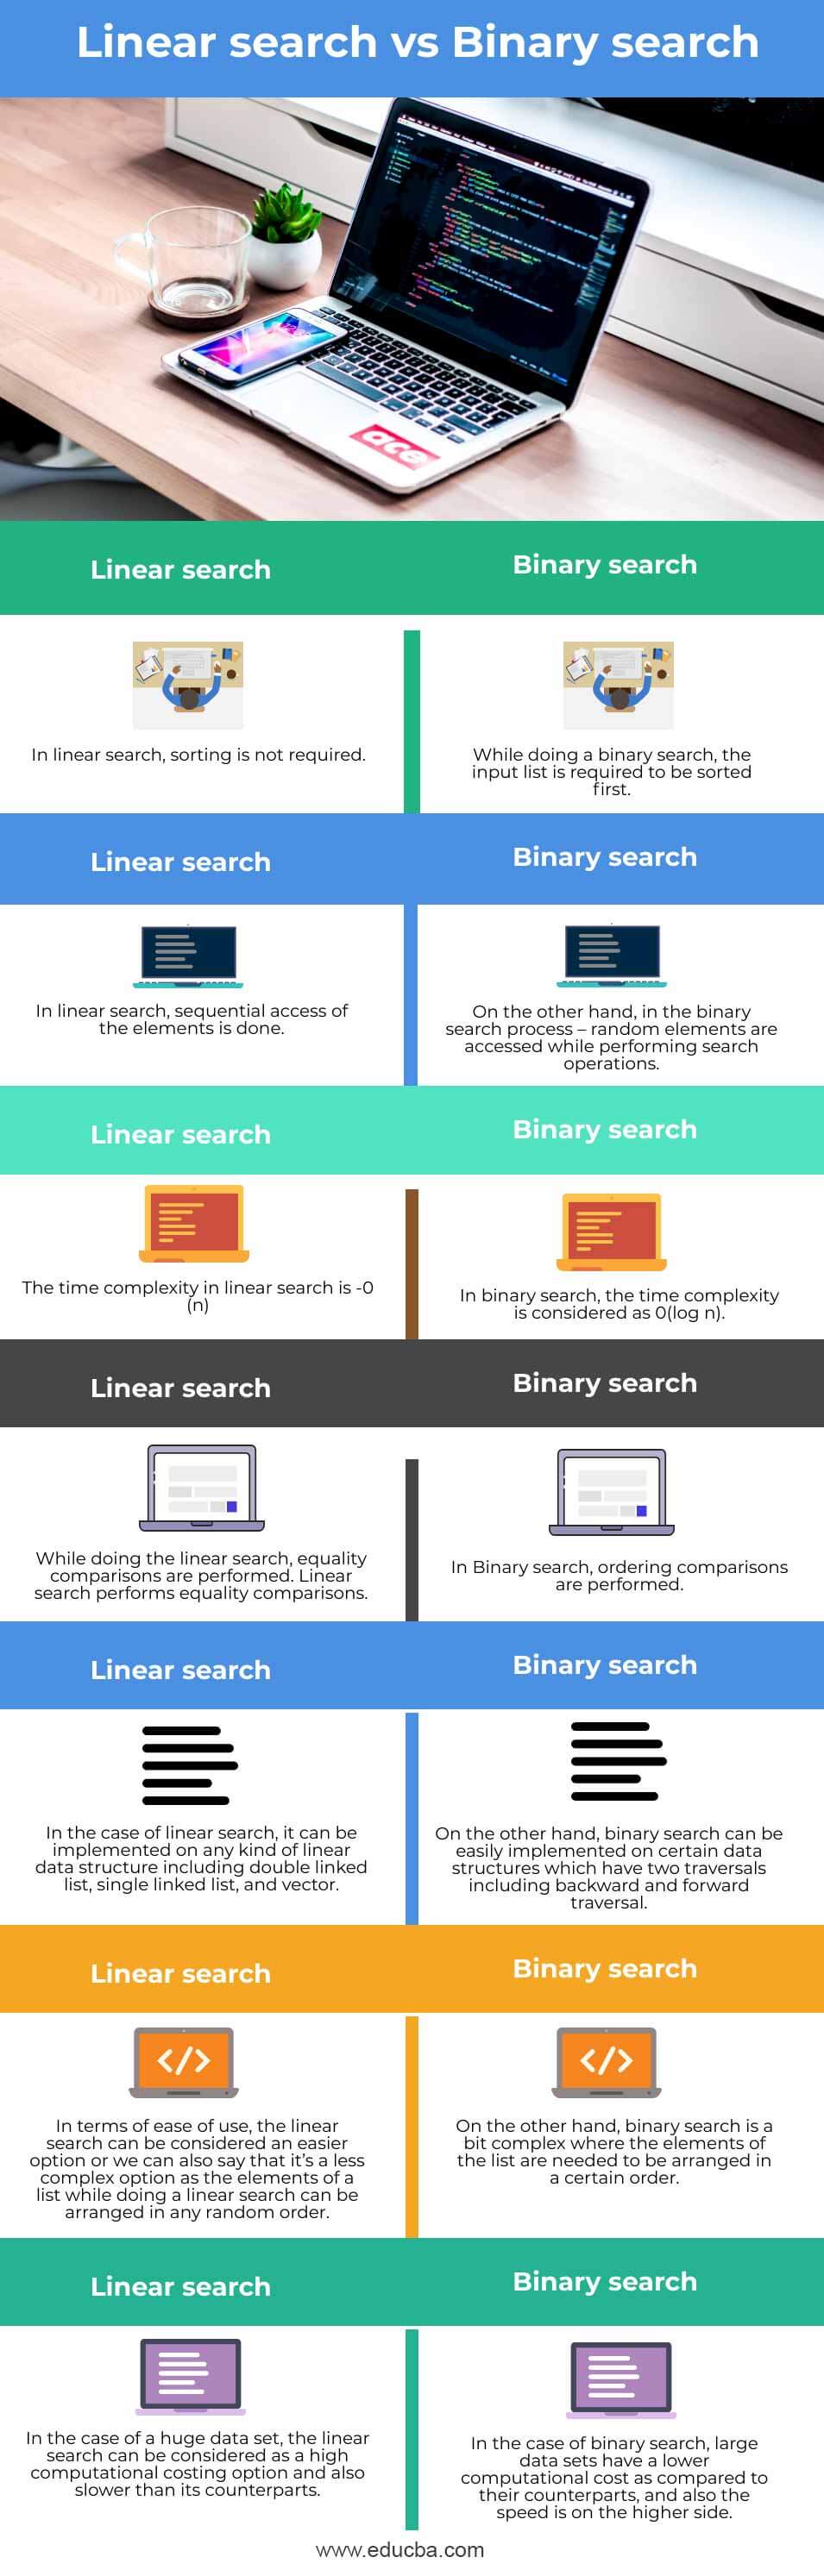 Linear-search-vs-Binary-search-info